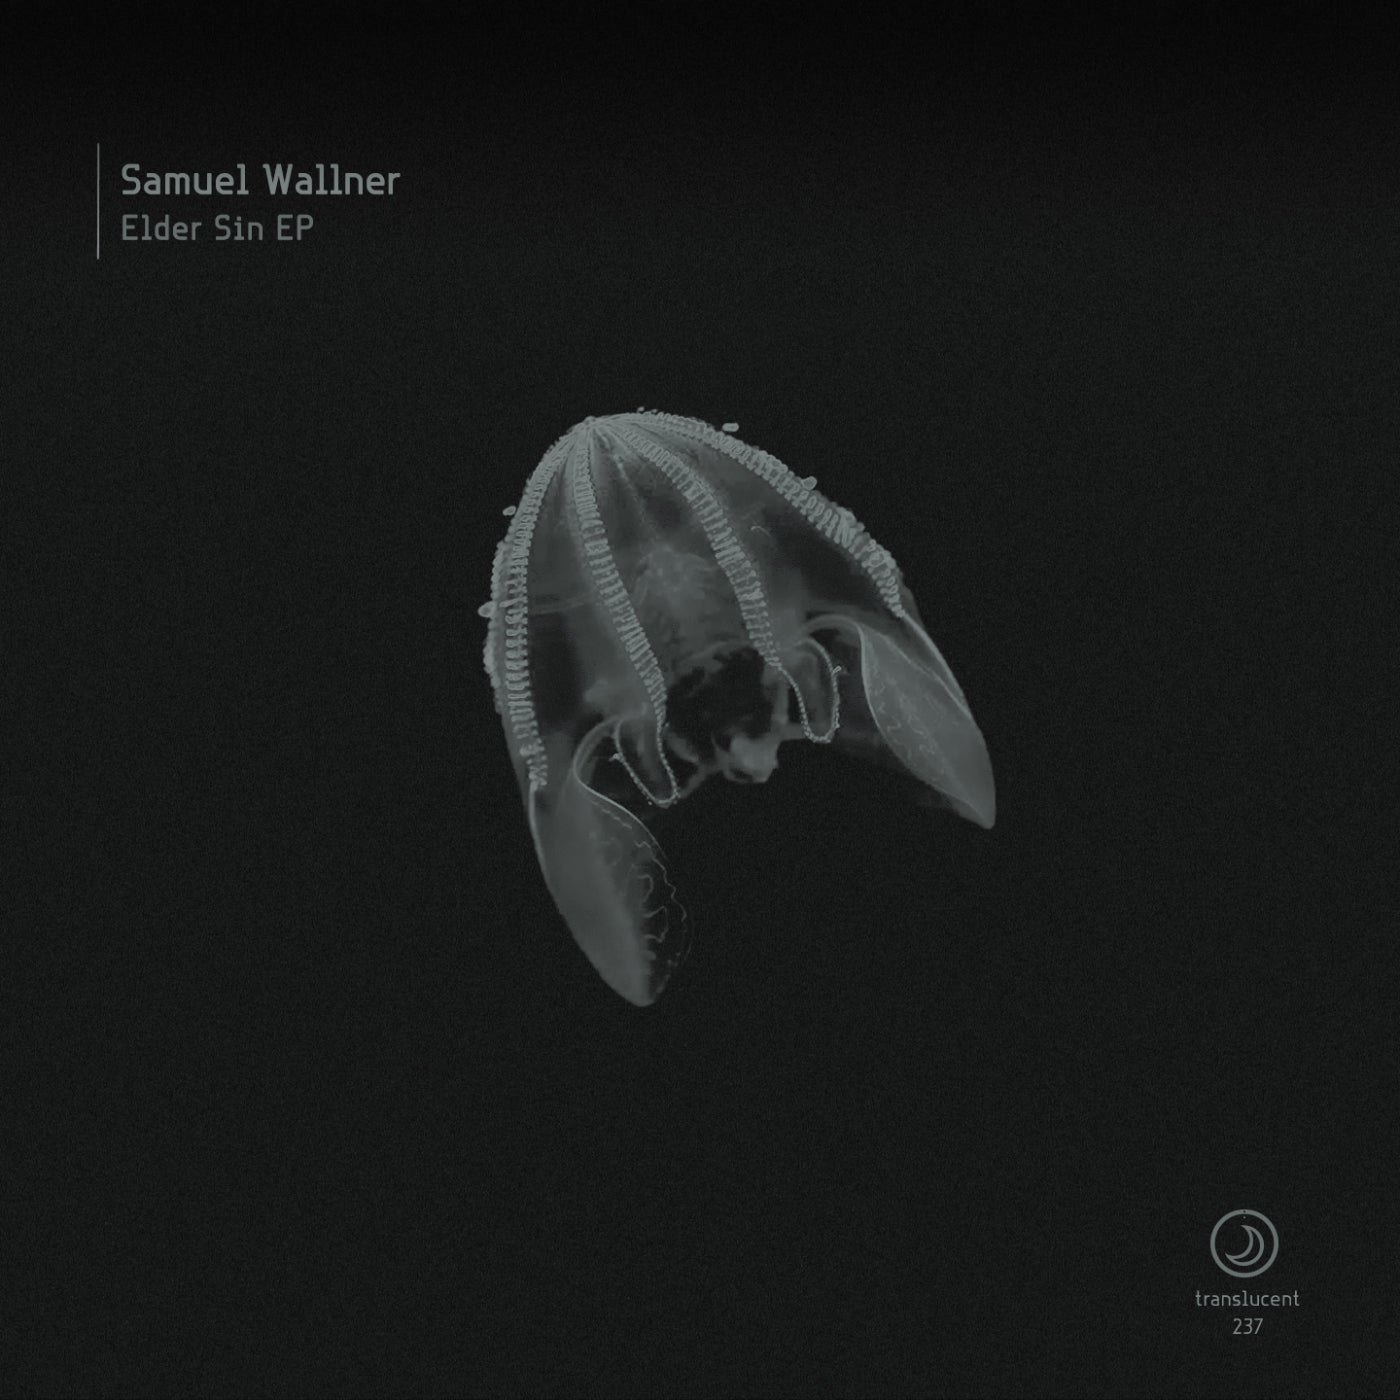 image cover: Samuel Wallner - Elder Sin EP on Translucent